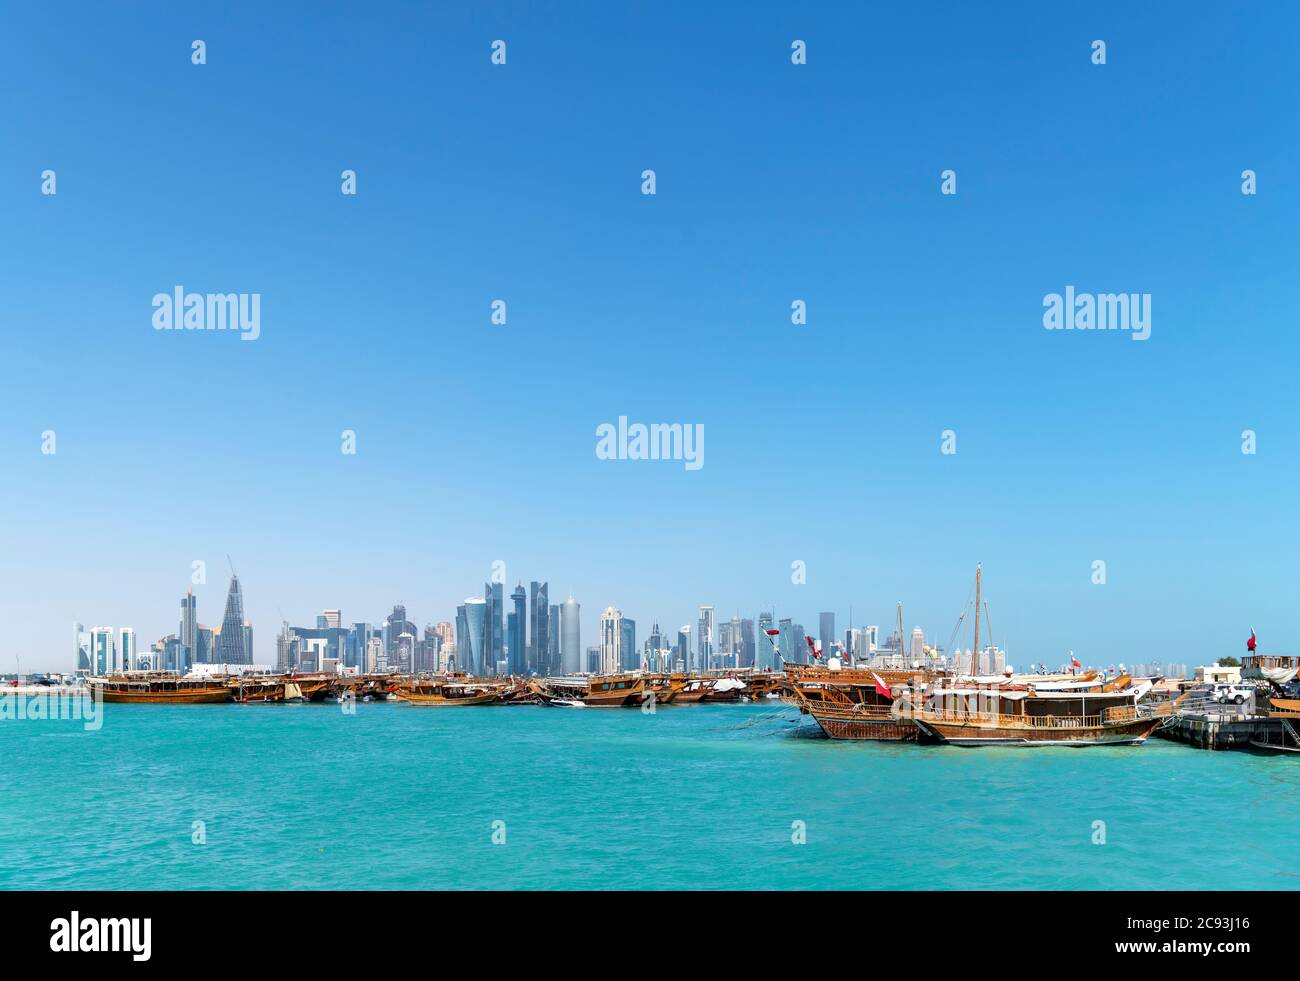 Daus im Hafen von Dhow mit der Skyline des West Bay Central Business District, Doha, Katar, Mittlerer Osten Stockfoto